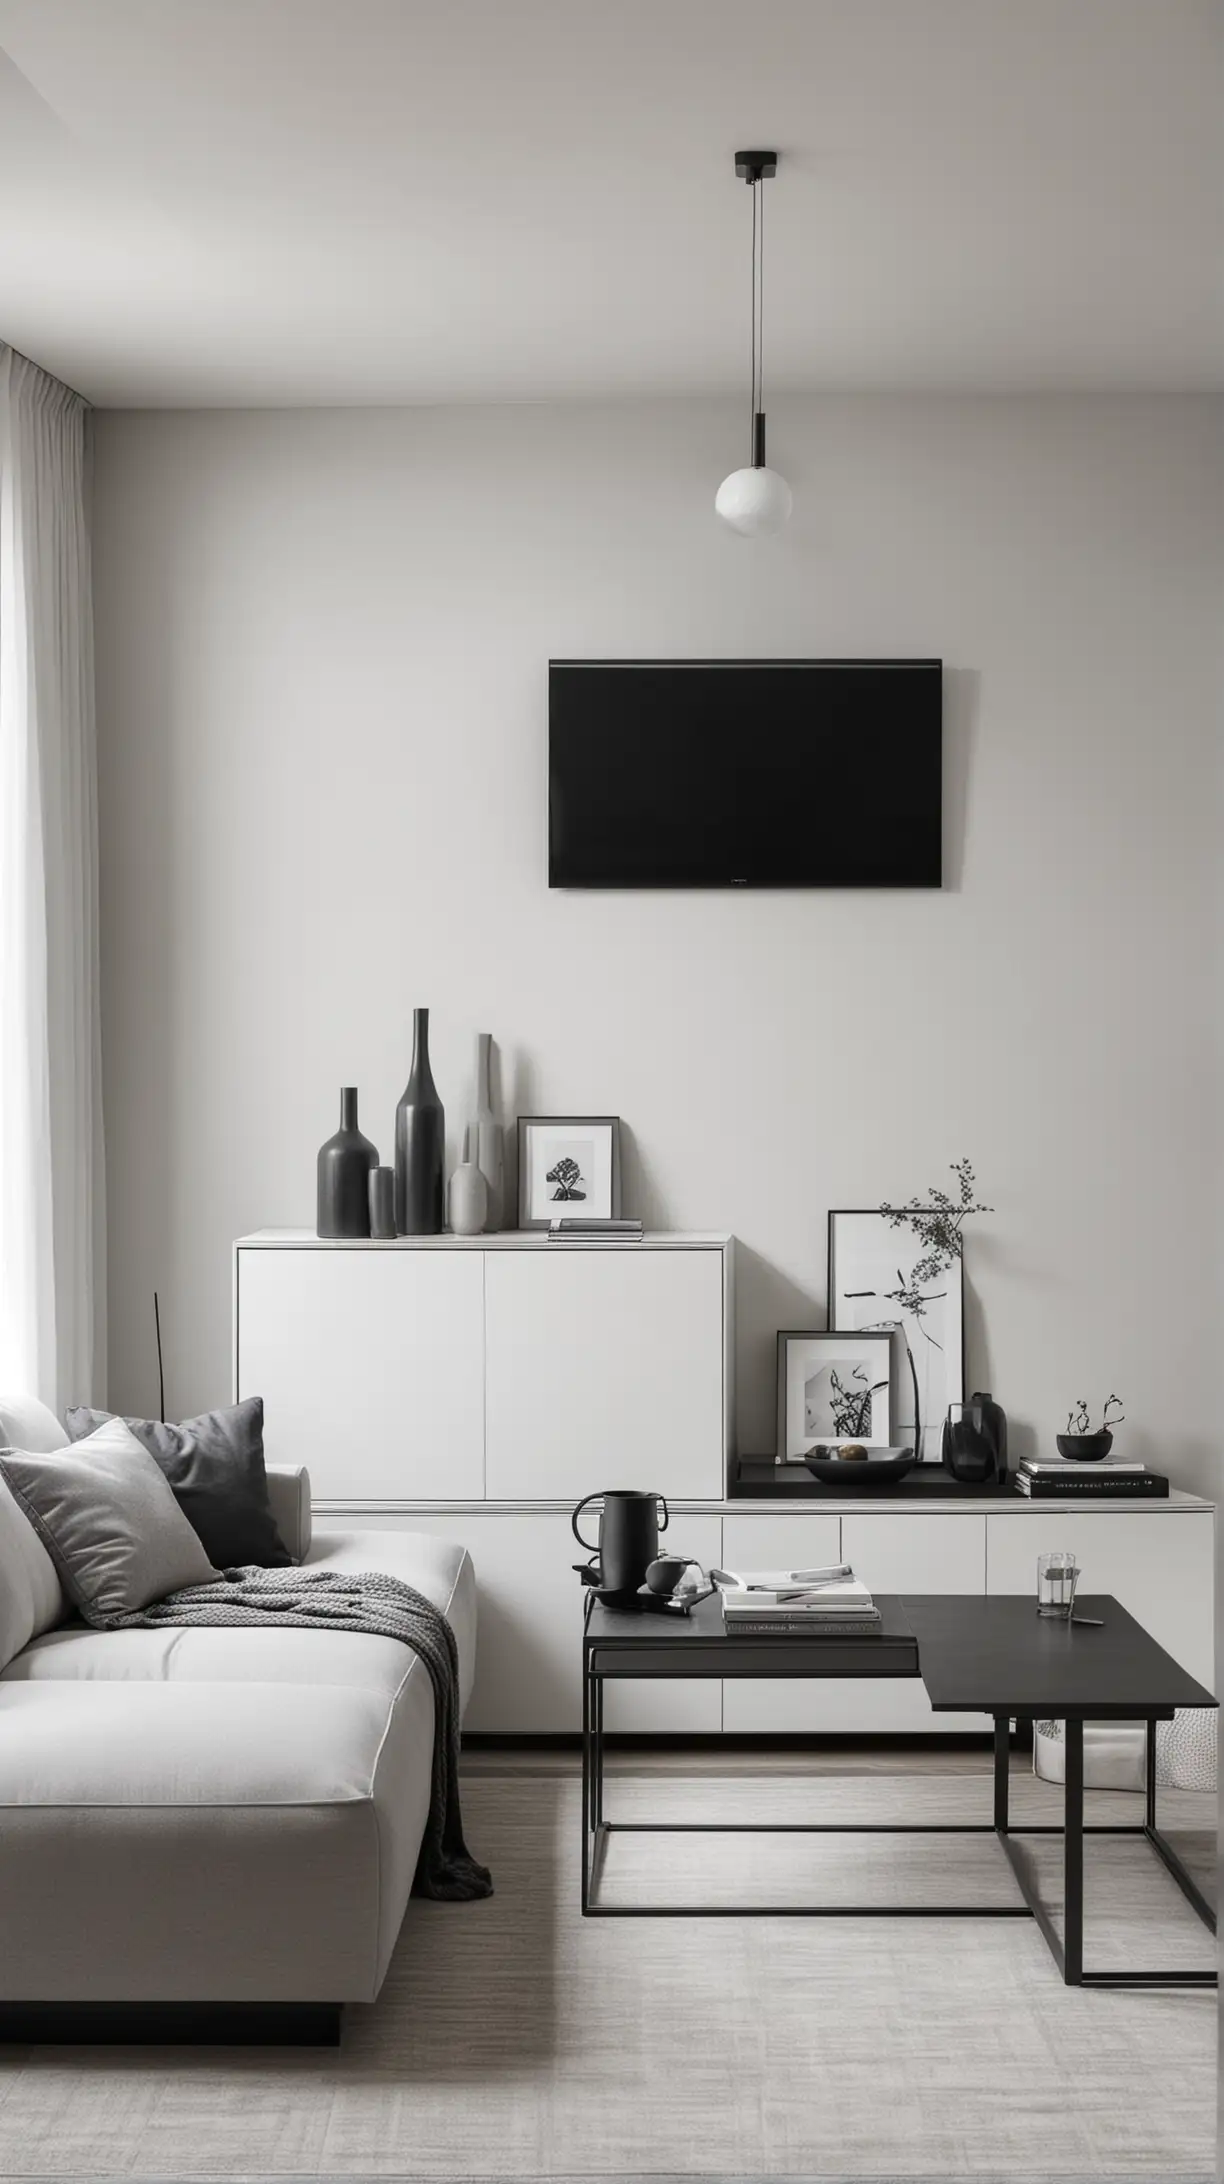 Sleek Monochrome Minimalist Living Room with Elegant Furniture